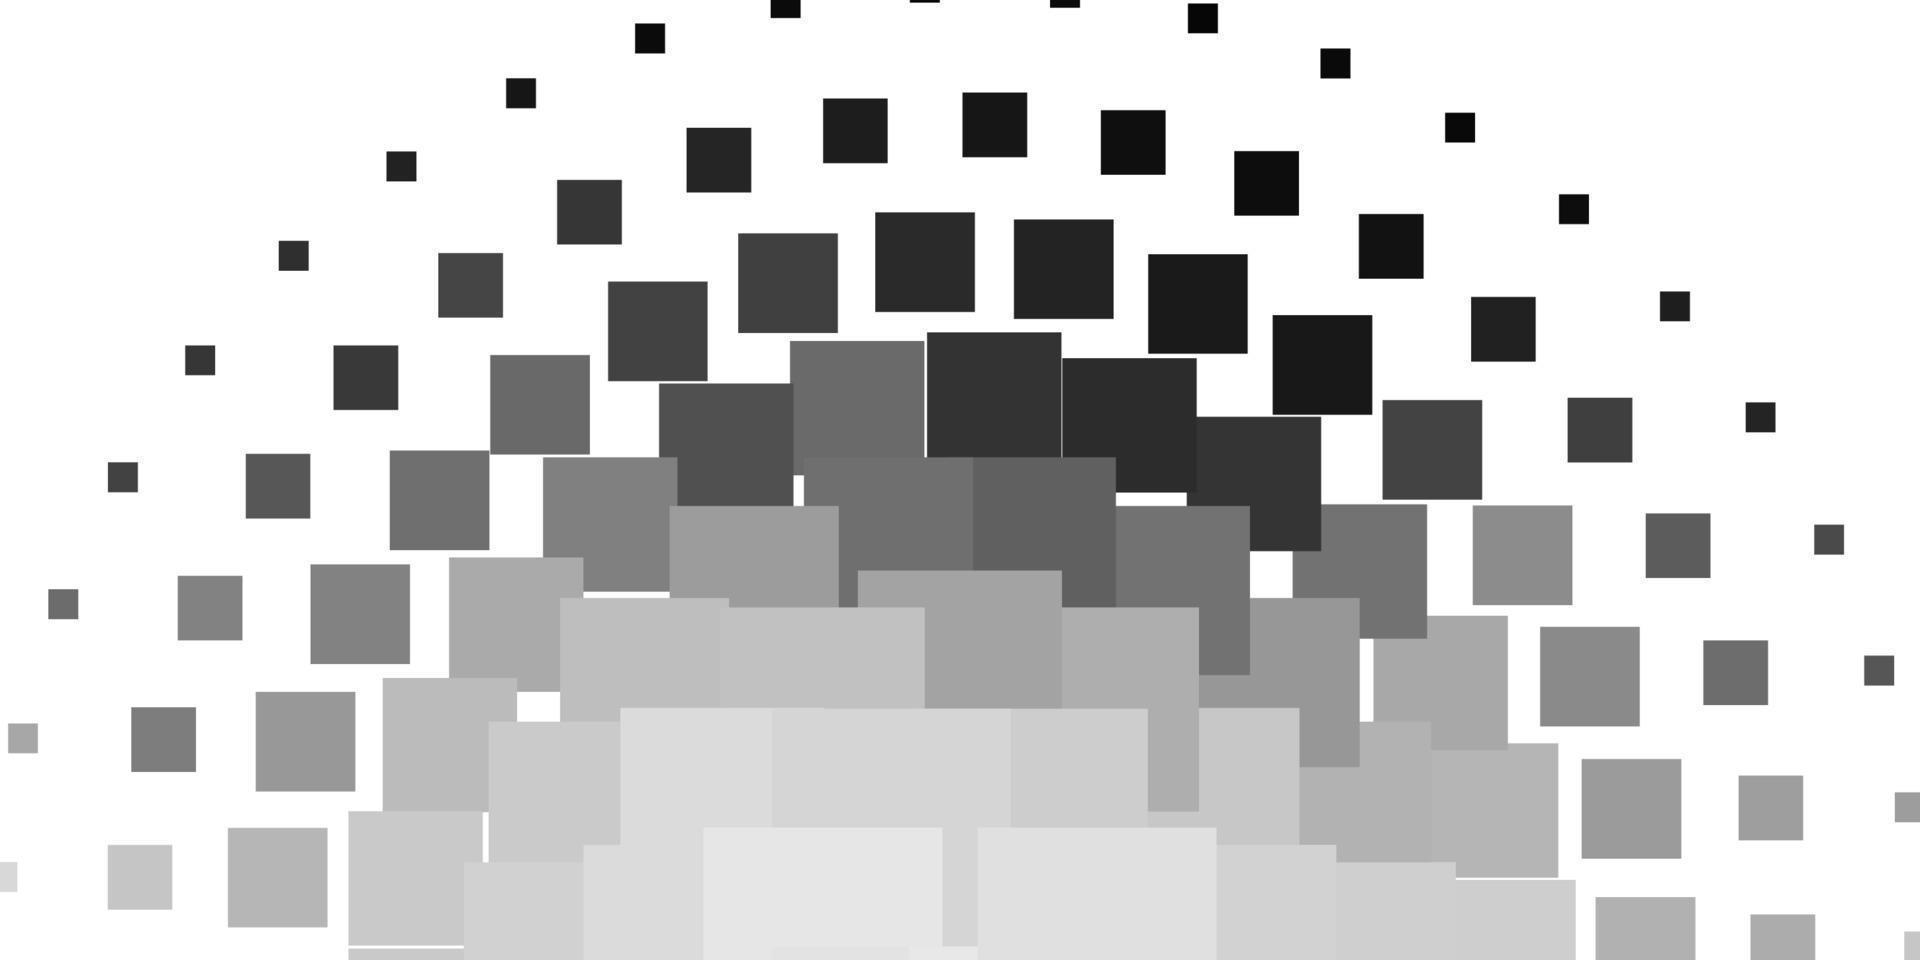 Fondo de vector gris claro en estilo poligonal.